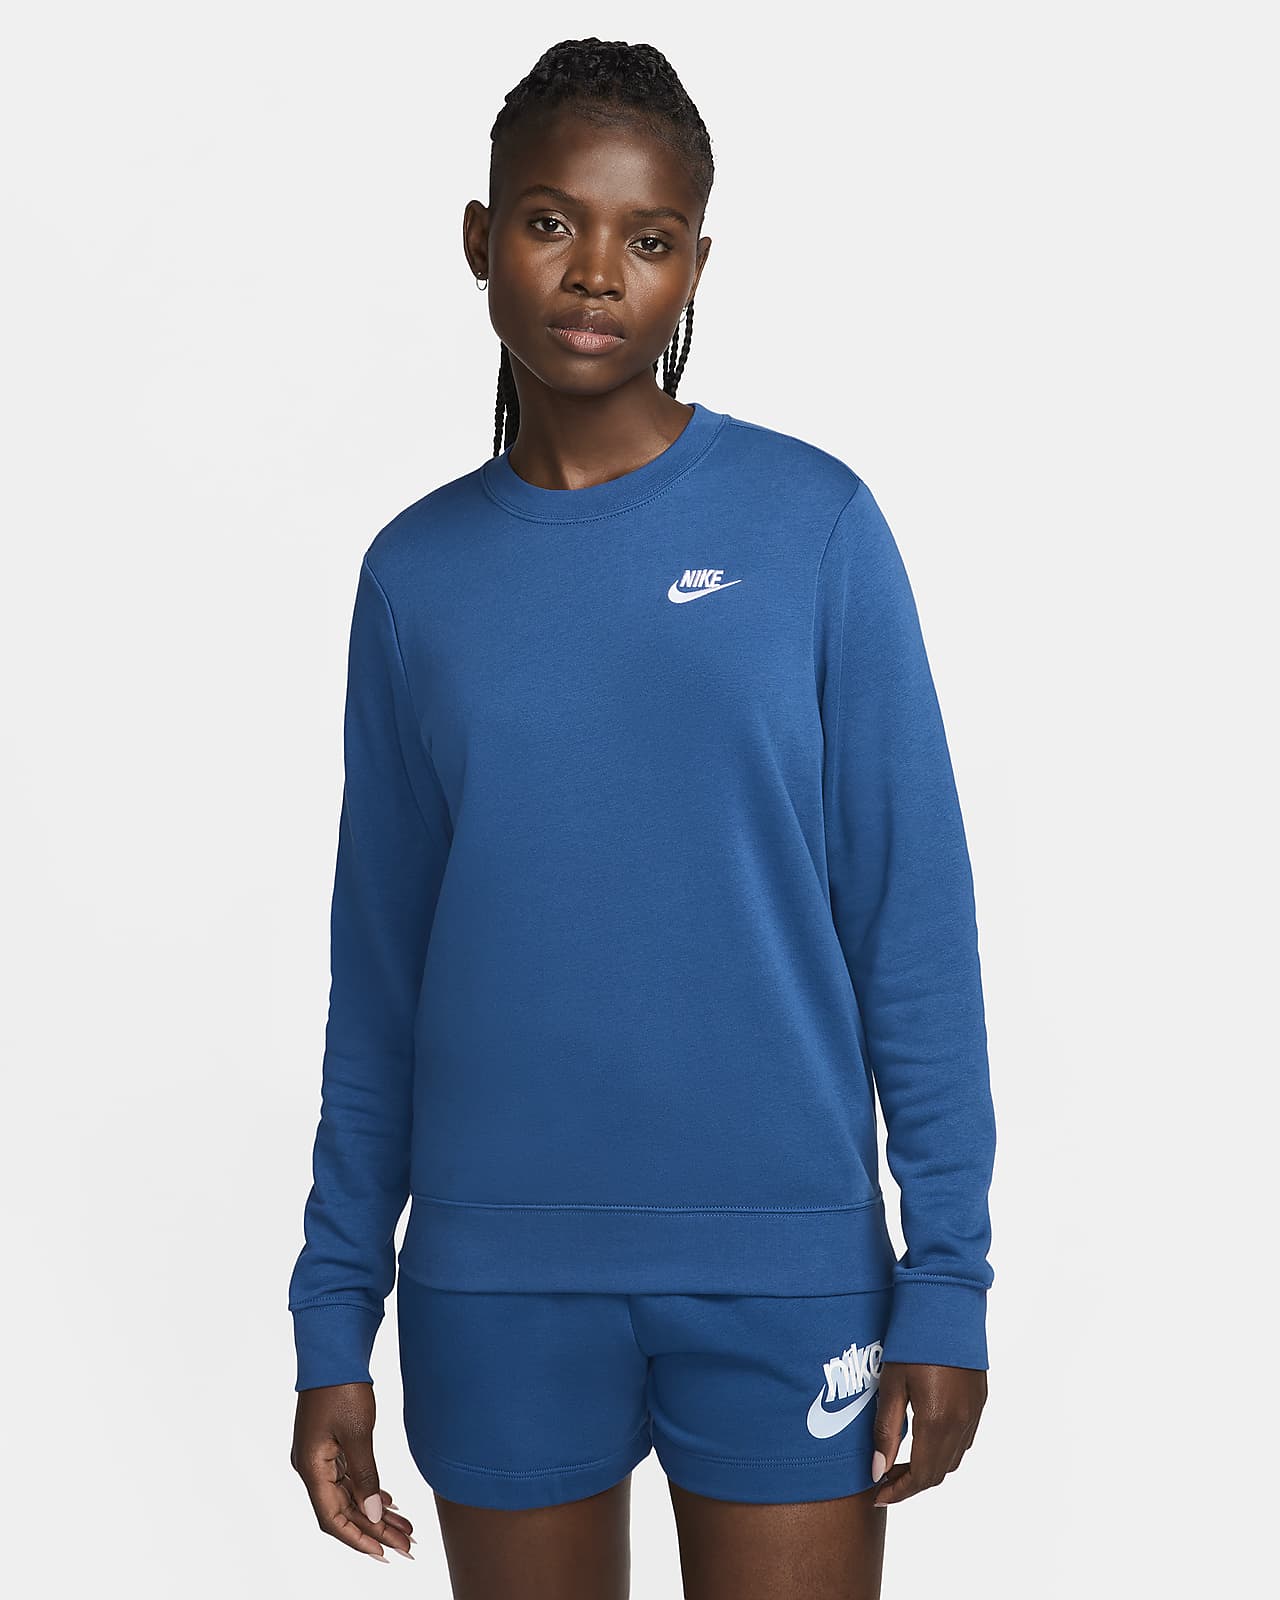 Gray Nike Crewneck Sweatshirt